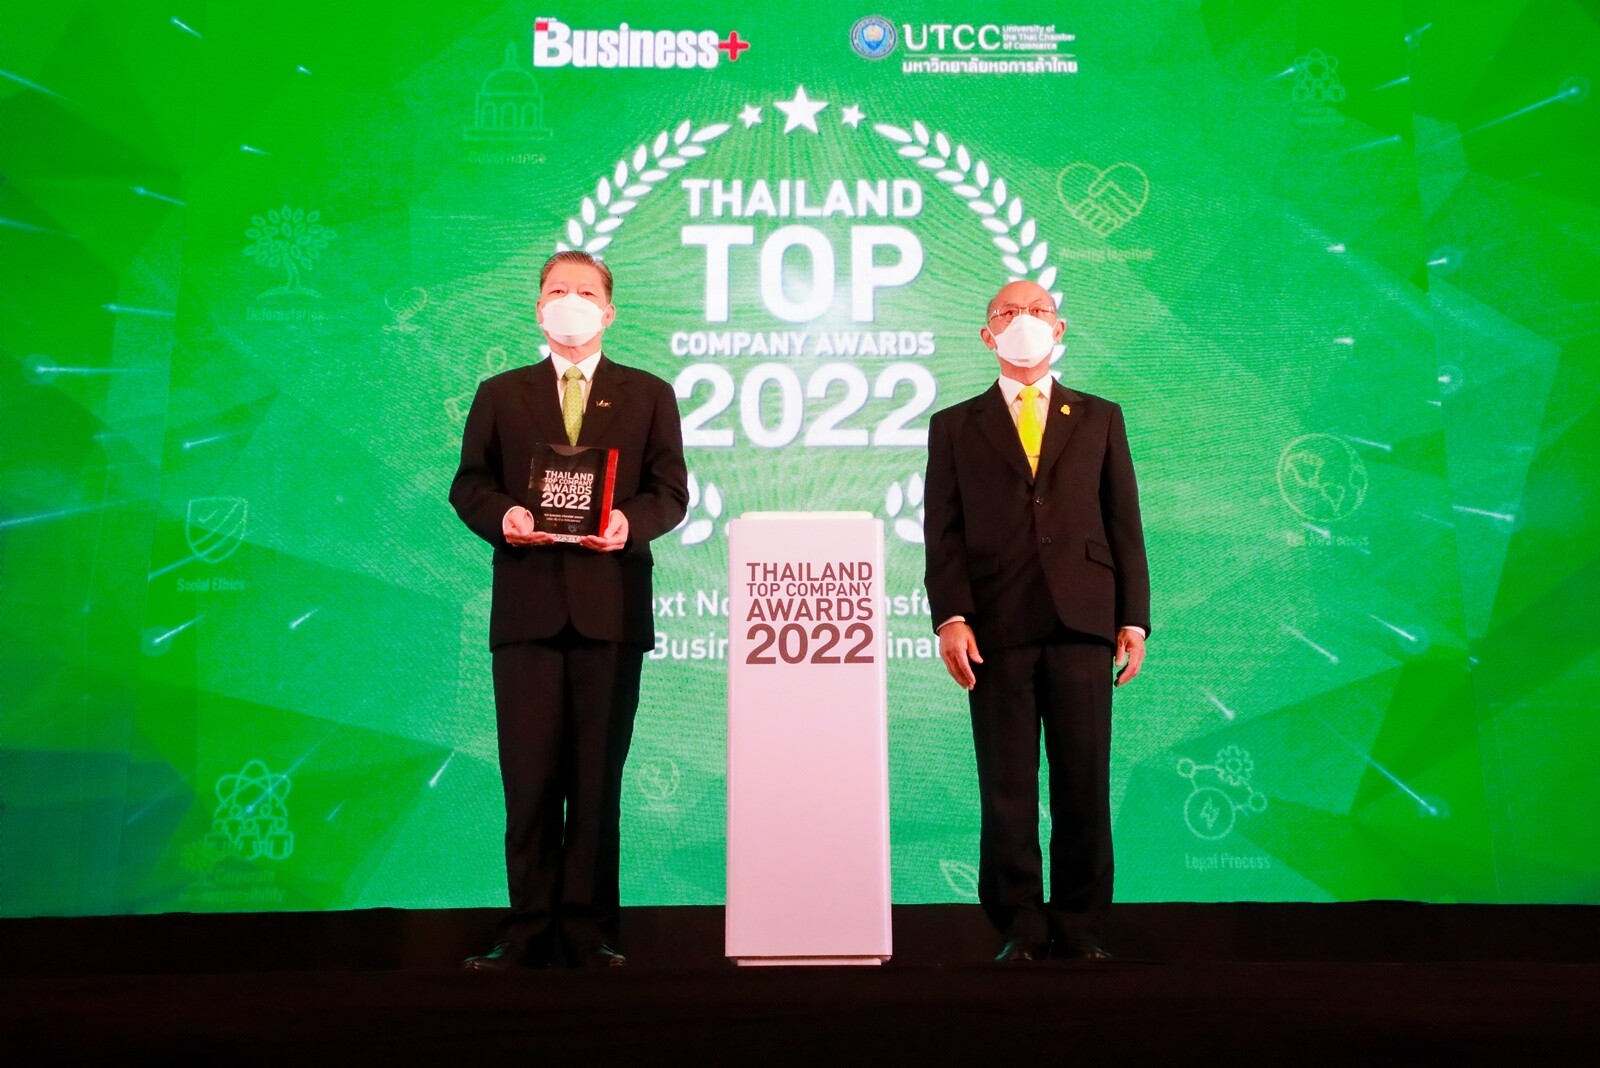 เอ็ม บี เค คว้ารางวัล THAILAND TOP COMPANY AWARDS 2022 ประเภทความเป็นเลิศ "Top Business Strategy Award 2022"